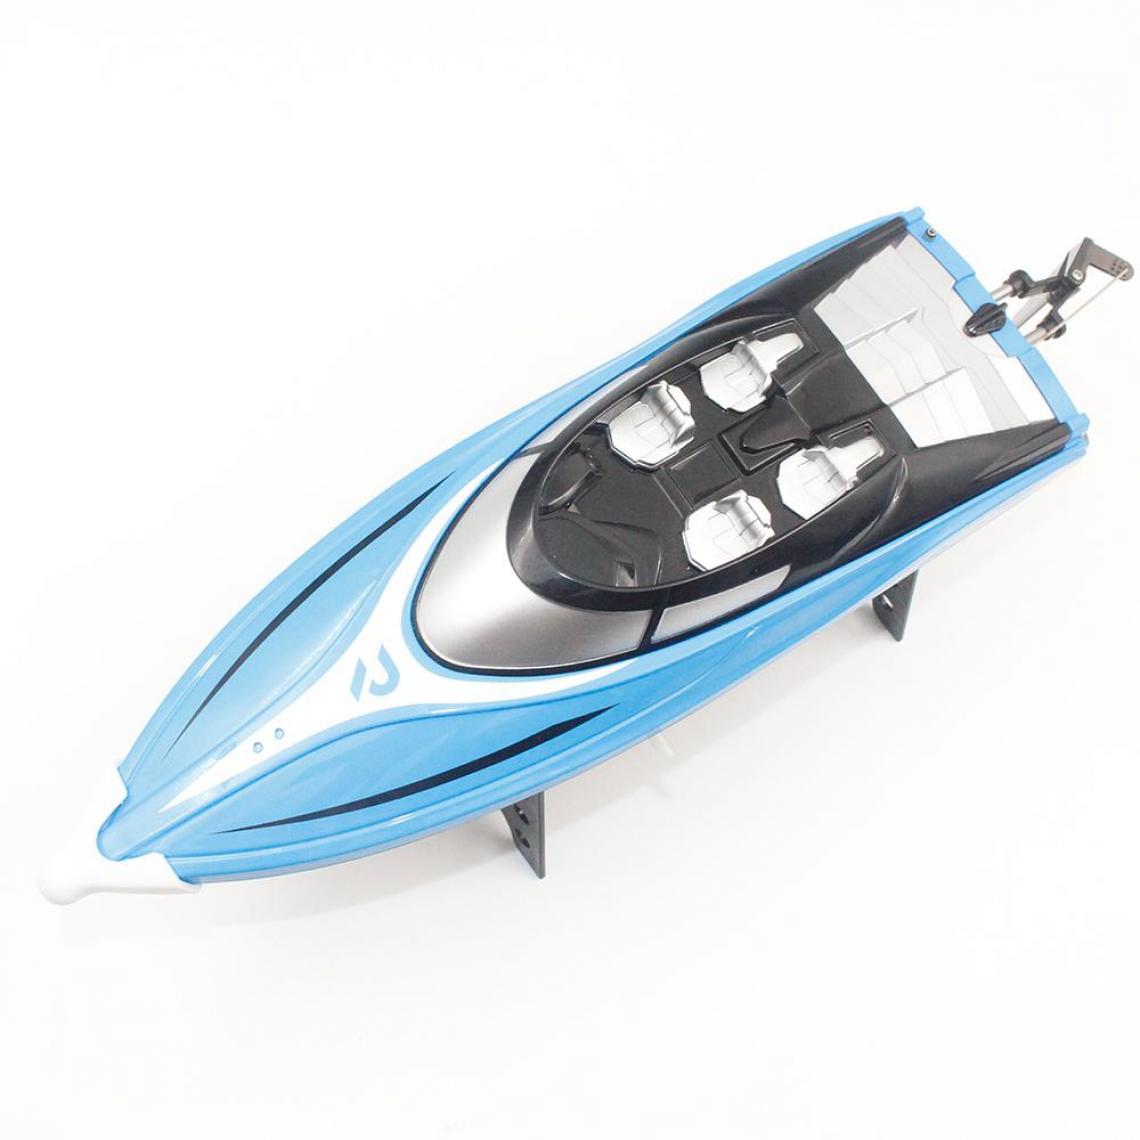 Universal - 2.4GHz 4ch 25km/H High Speed Mini Racing RC Boat Acceleration Boat avec système de refroidissement à l'eau Flip pour les enfants Jouets Cadeaux | RC Submarine(Bleu) - Bateaux RC